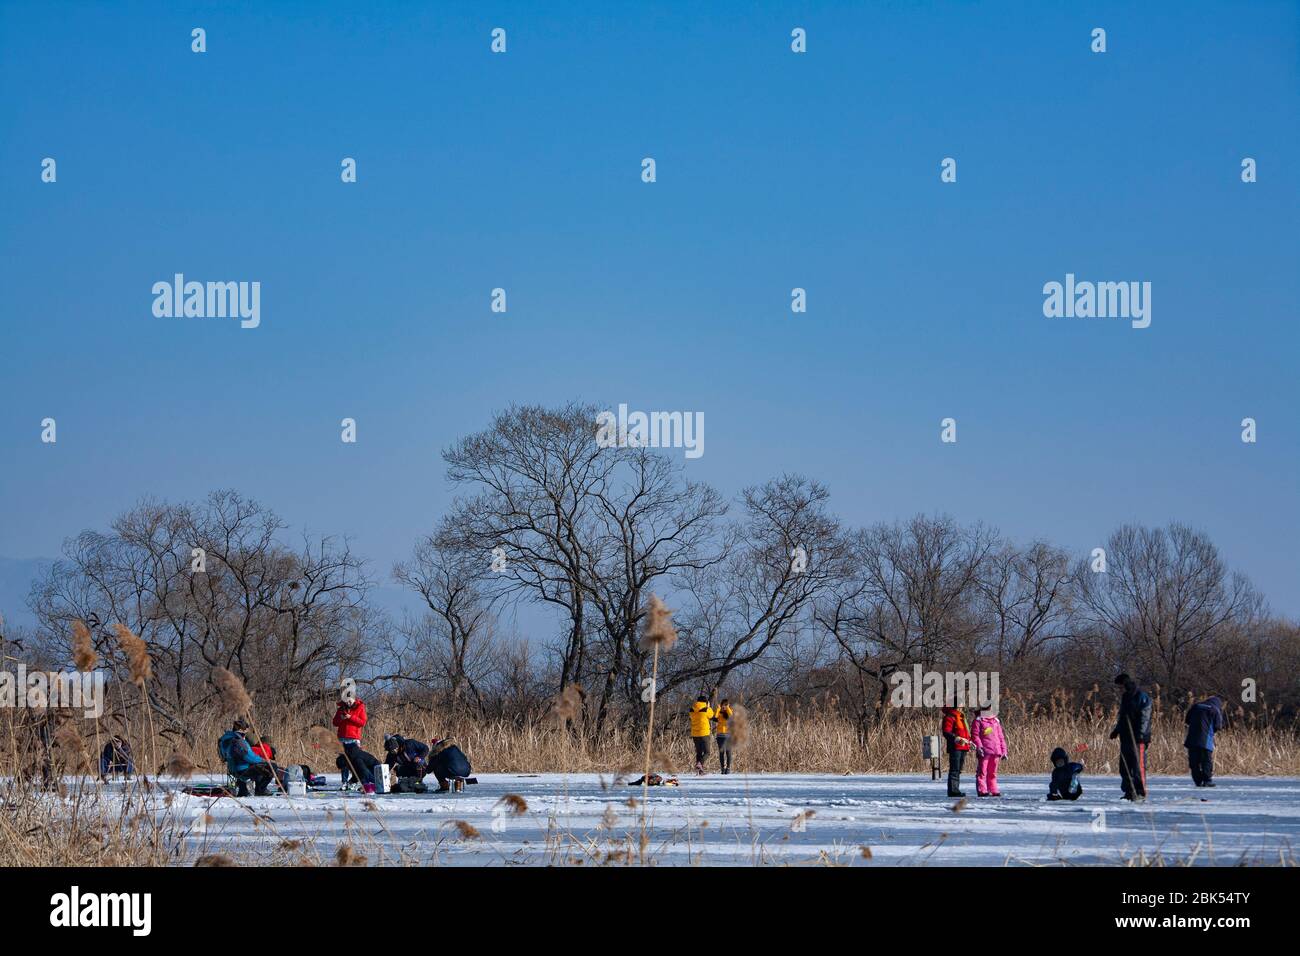 Beaucoup de gens apprécient la pêche sur glace au lac Uiamho, Chuncheon-si, Corée Banque D'Images